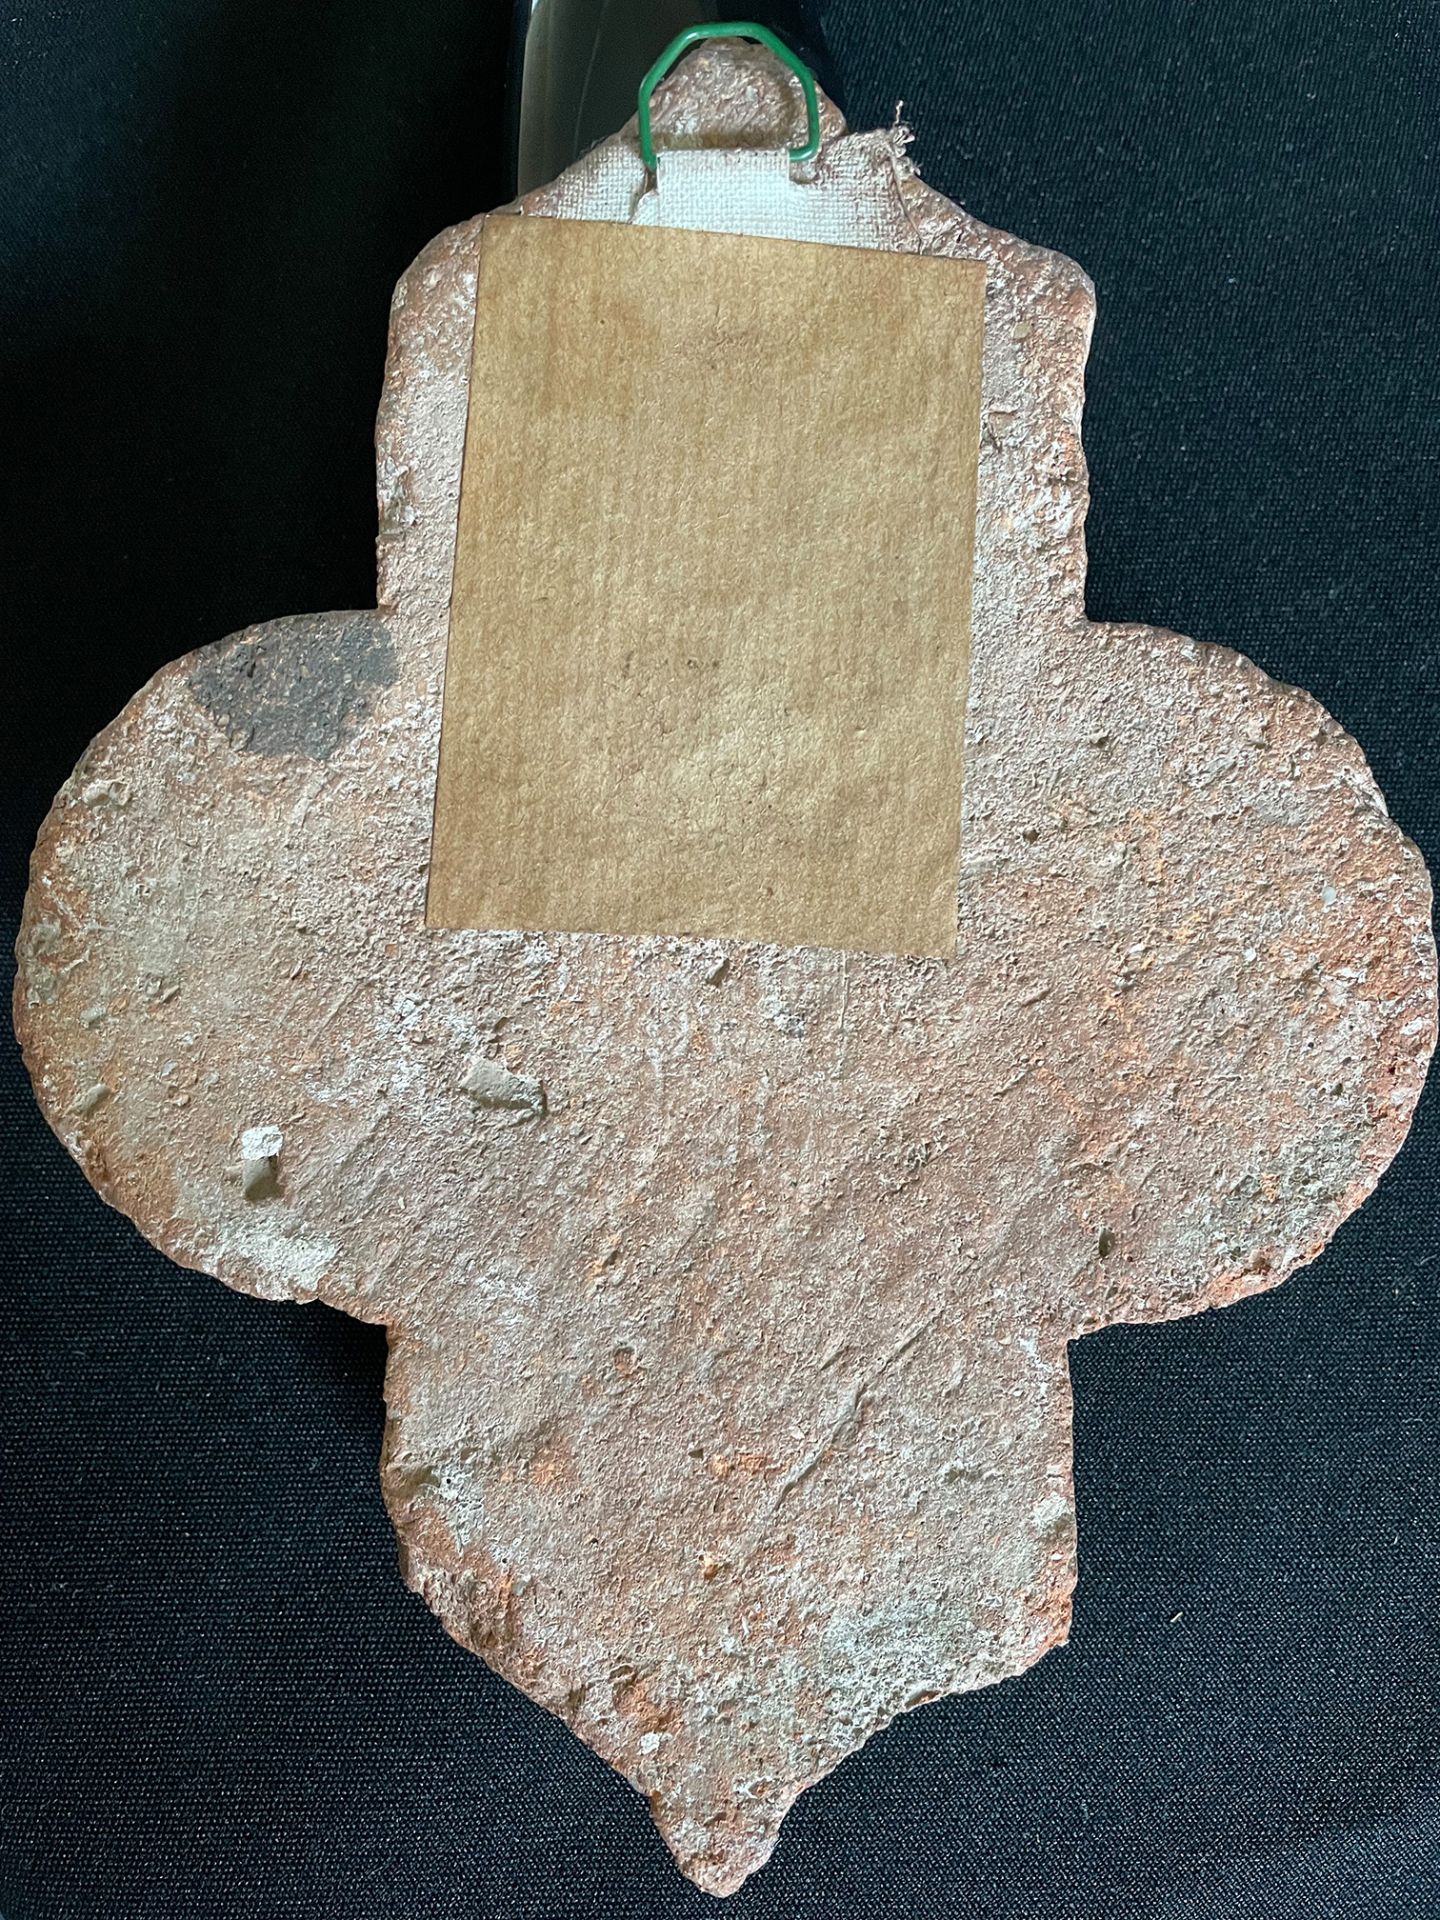 Keramikfliese, (rückseitiges Etikett: "Keramikfliese 12. Jh. als Wächter in Stadttoren") Höhe 19 cm - Image 2 of 2